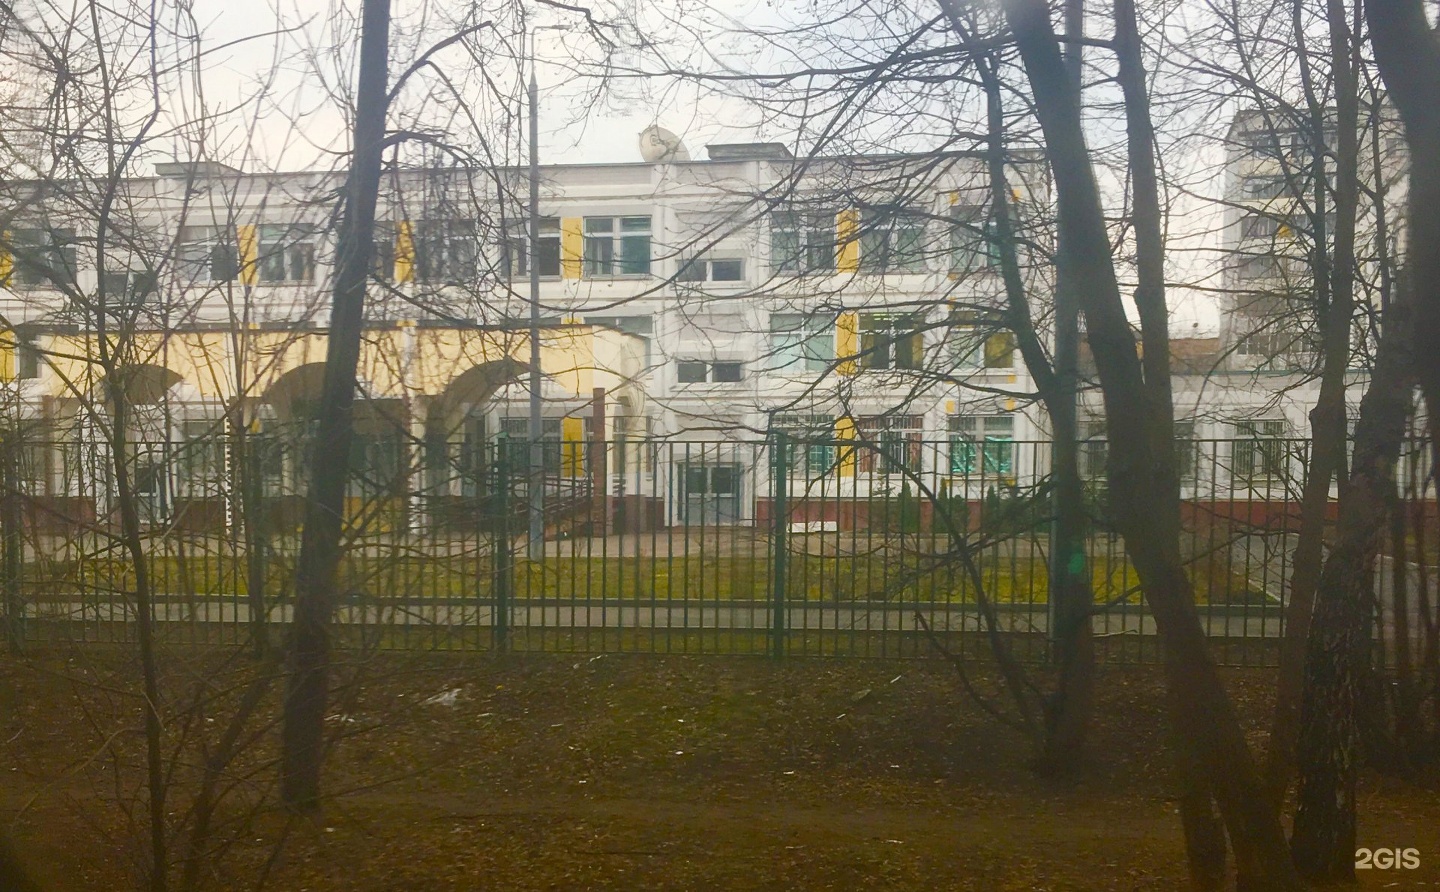 Москва школа 1143